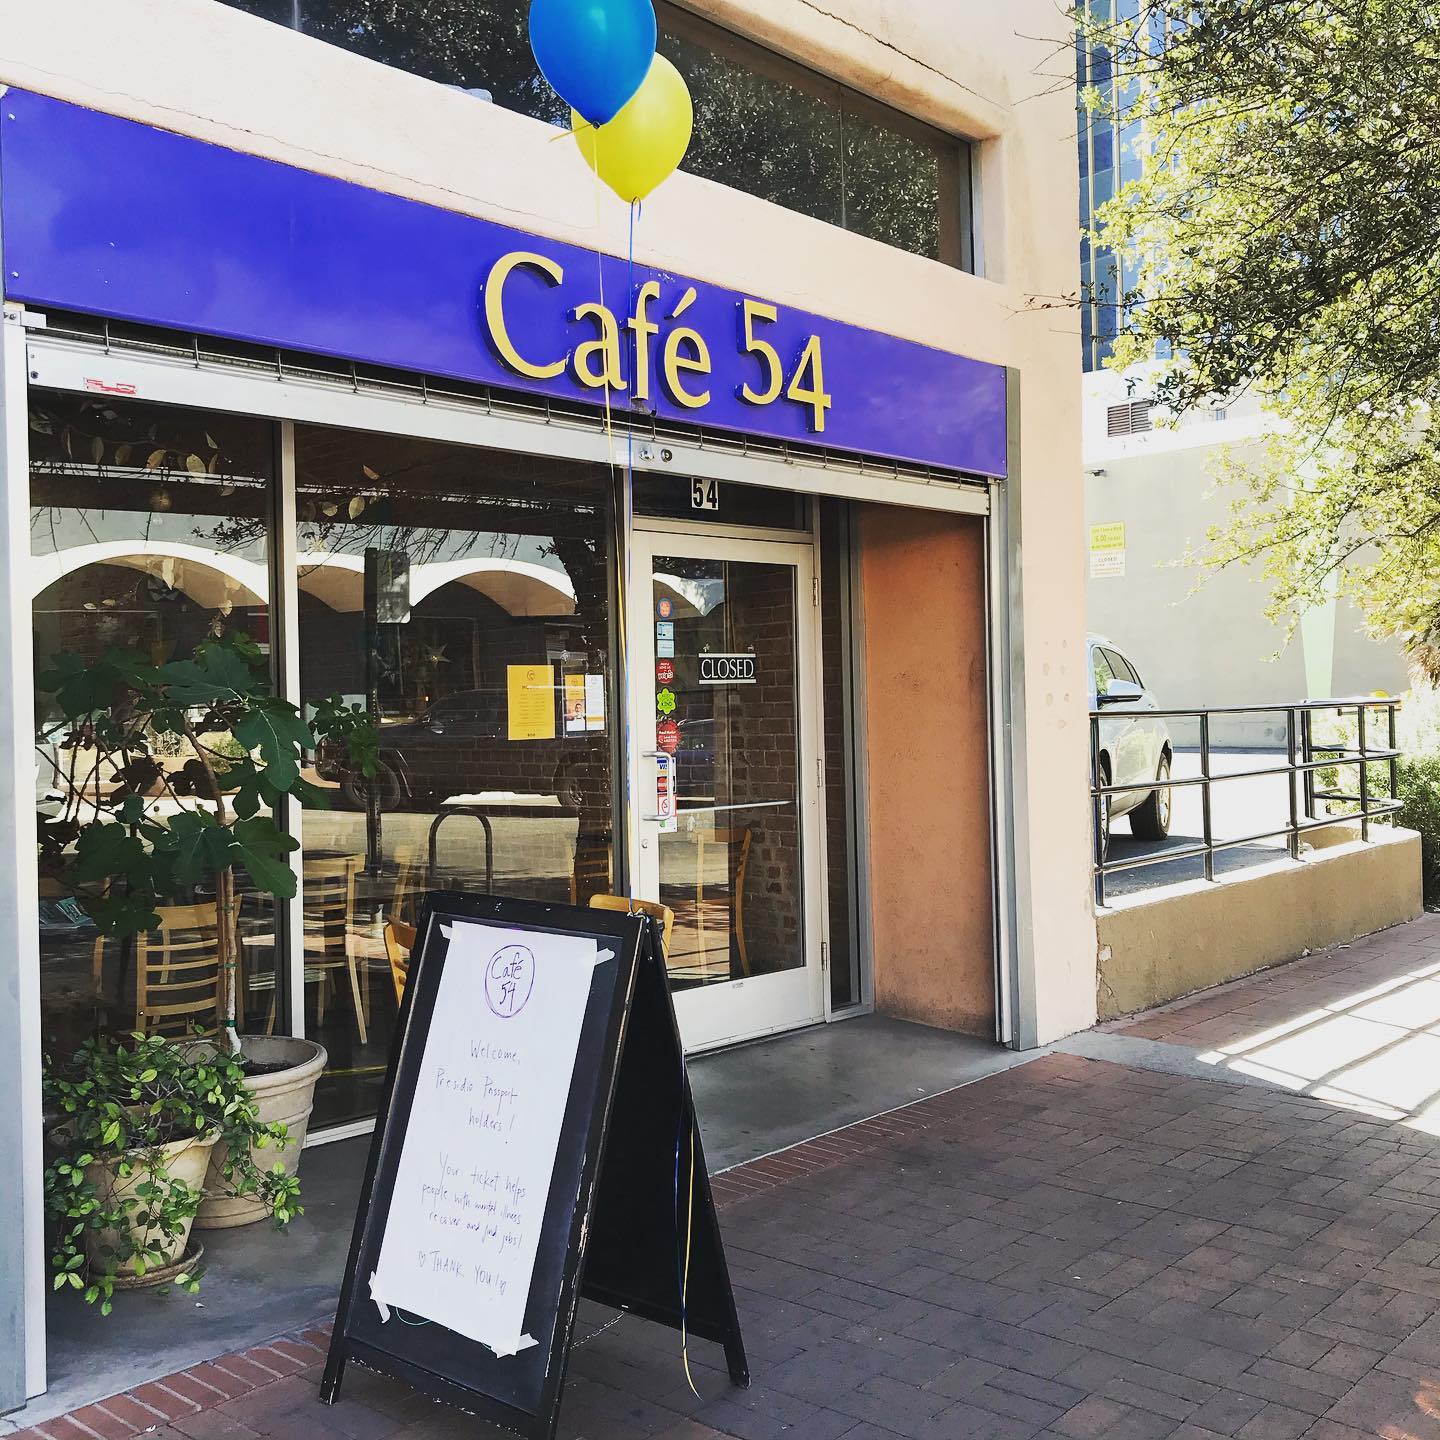 Cafe 54 facade